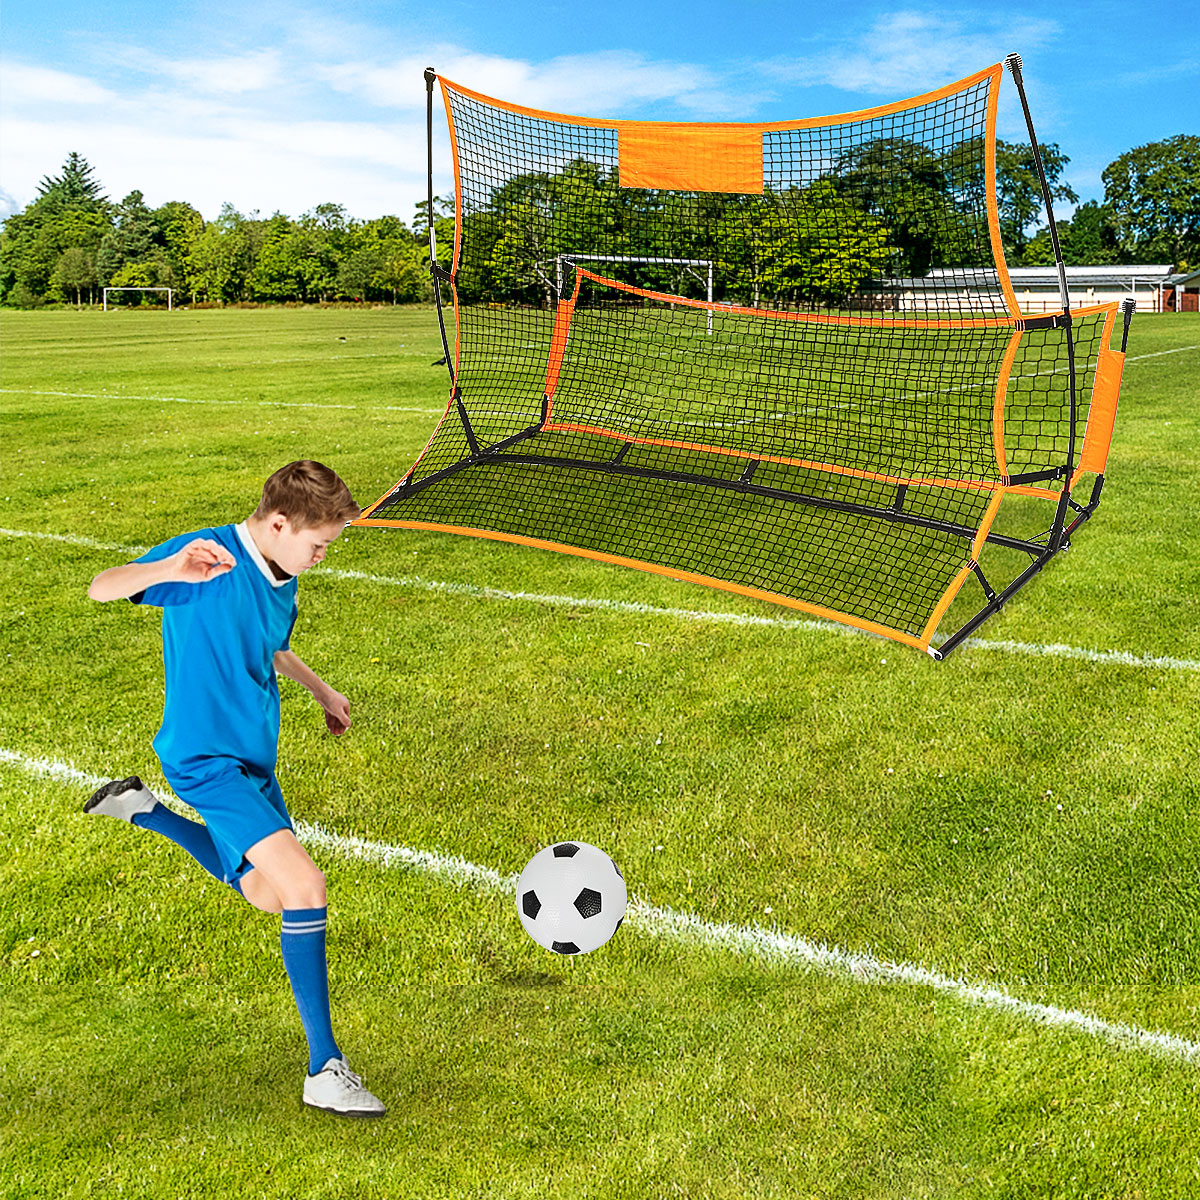 1821M-Soccer-Rebounder-Net-Portable-Folding-Football-Goal-Shoot-Training-Equipment-Outdoor-Sport-1817403-8